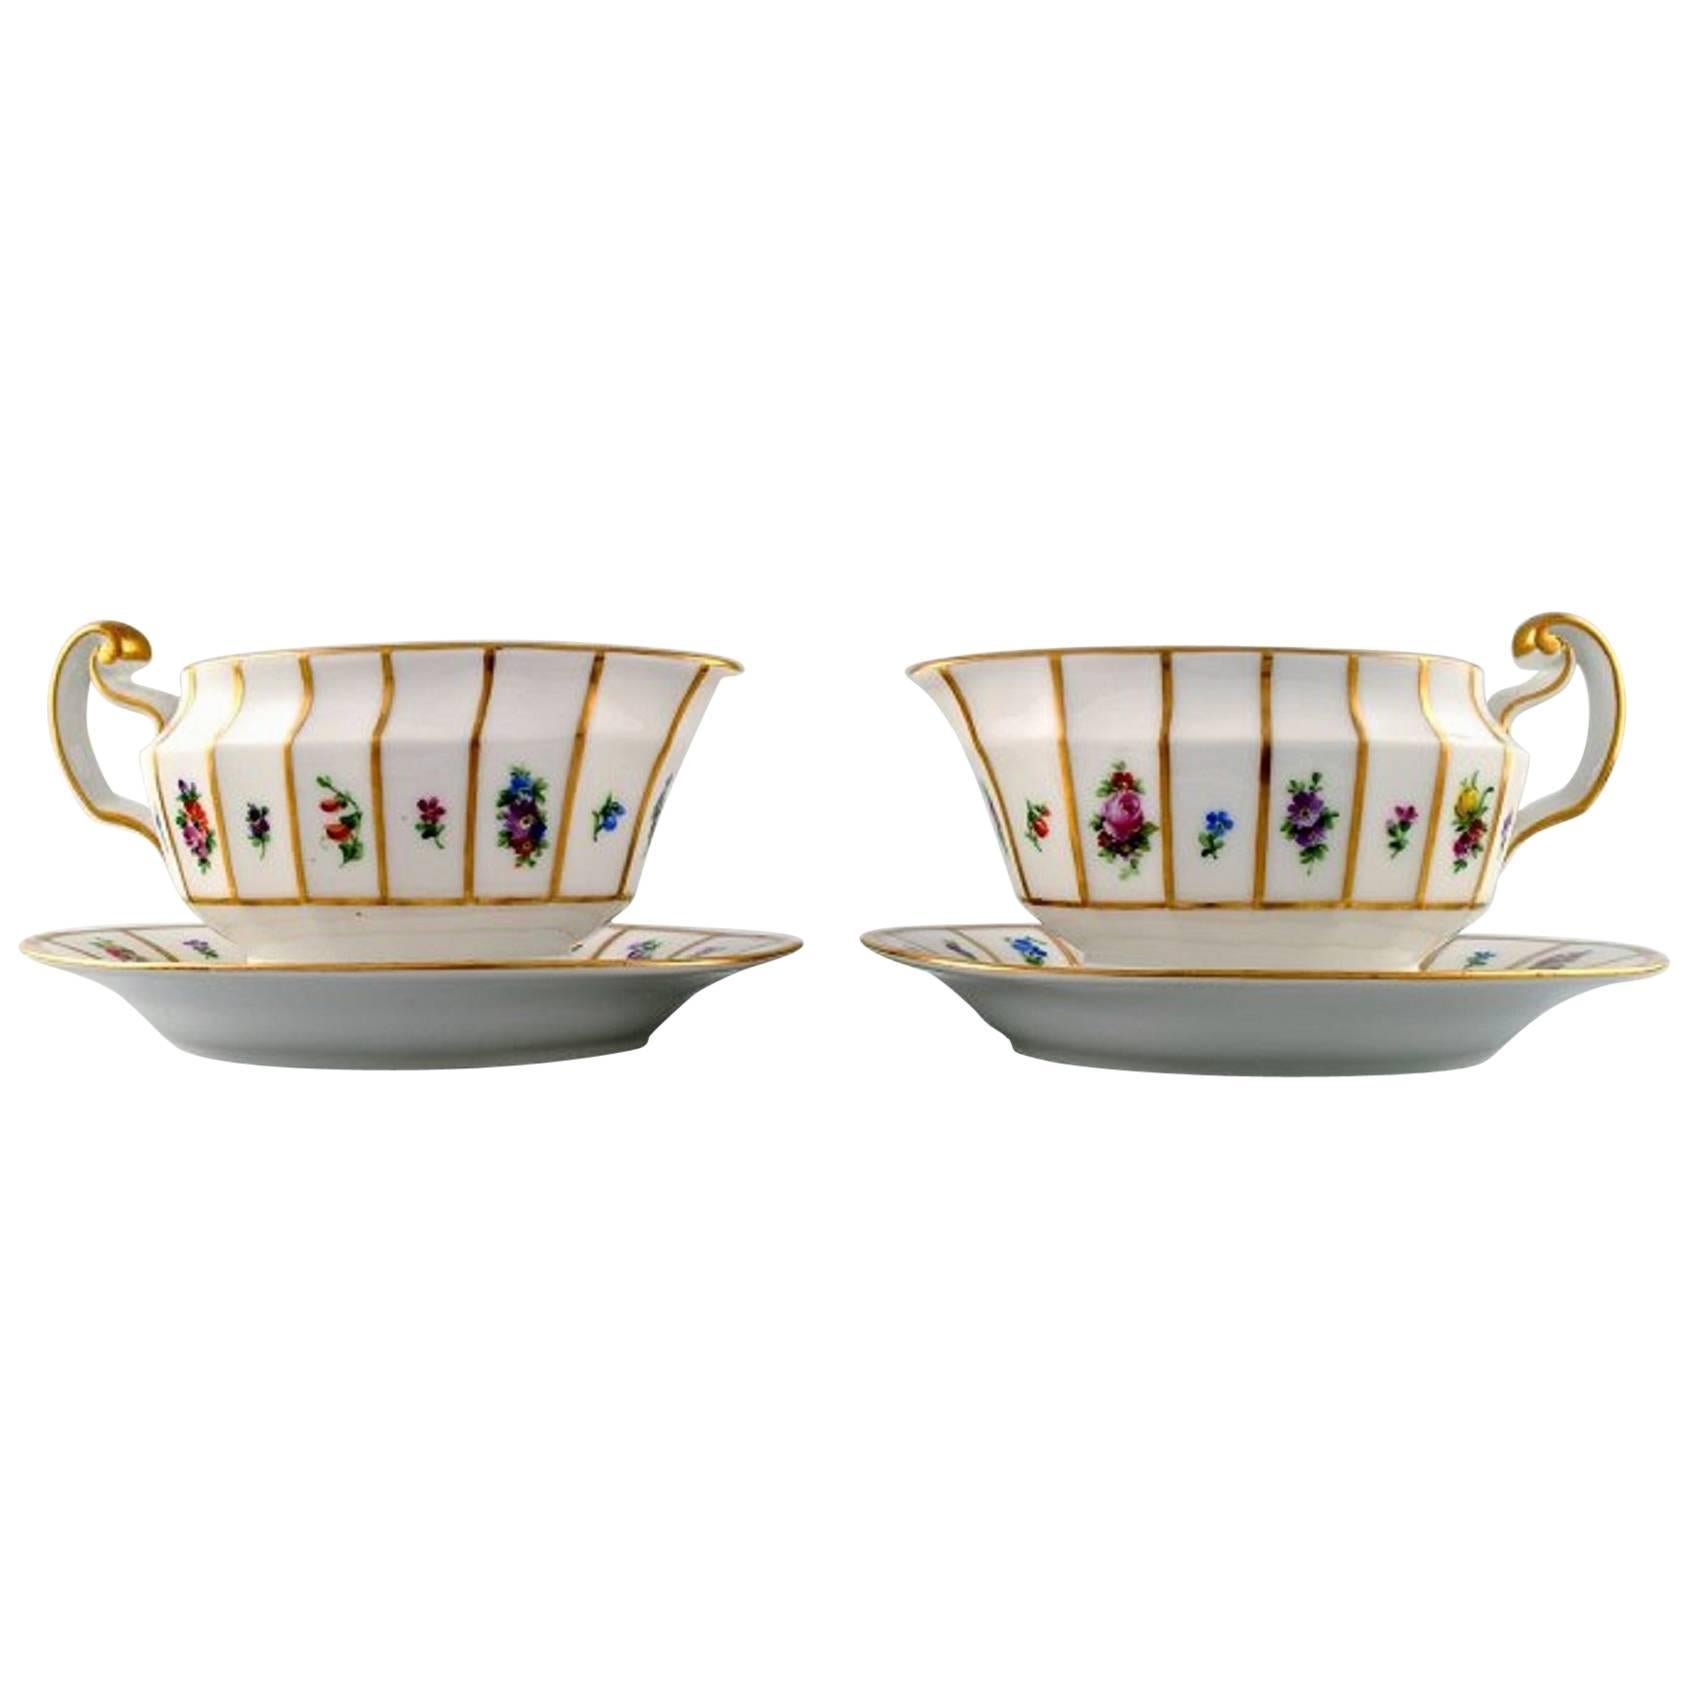 Two Pieces, Royal Copenhagen Henriette, Hand-Painted Porcelain, Gravy Boats